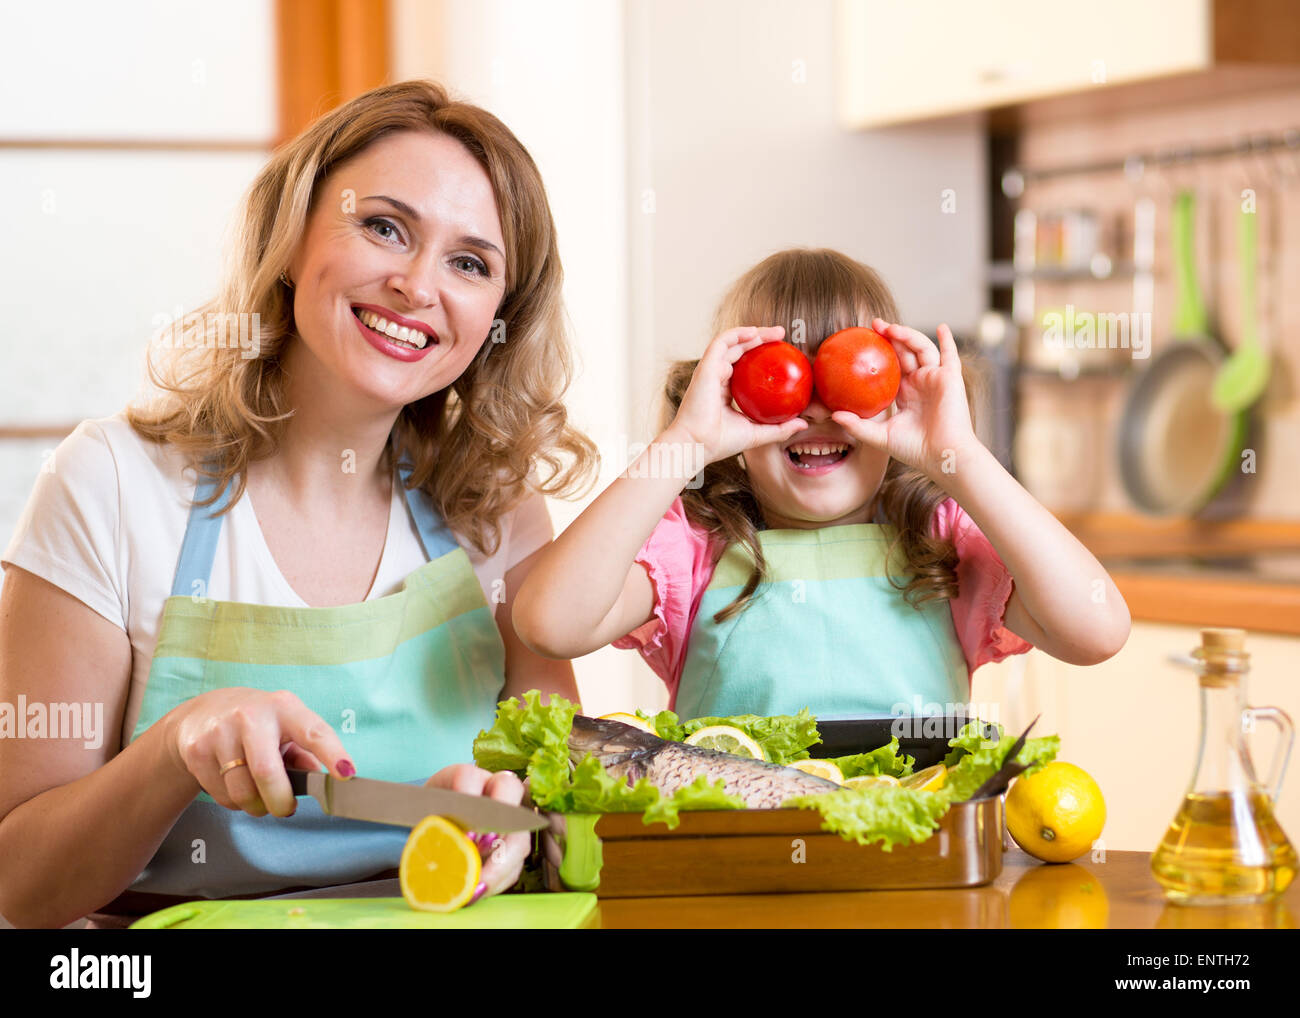 La mère et l'enfant s'amuser cooking in kitchen Banque D'Images